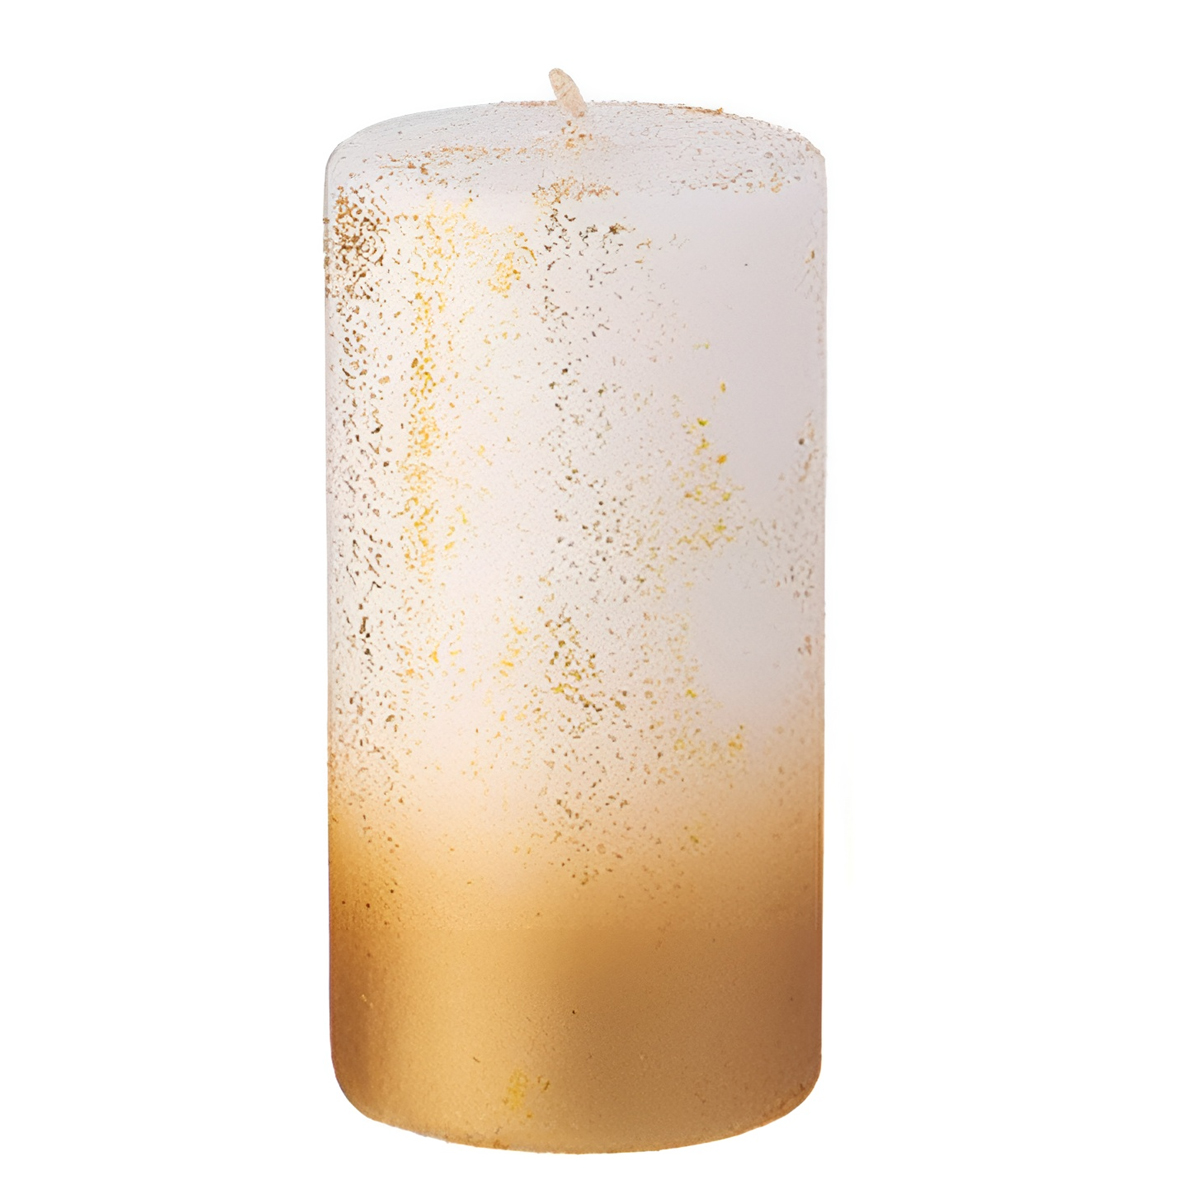 Свеча столбик Garda Decor 5x10см, цвет белый с золотом Garda Decor 315-326 - фото 1